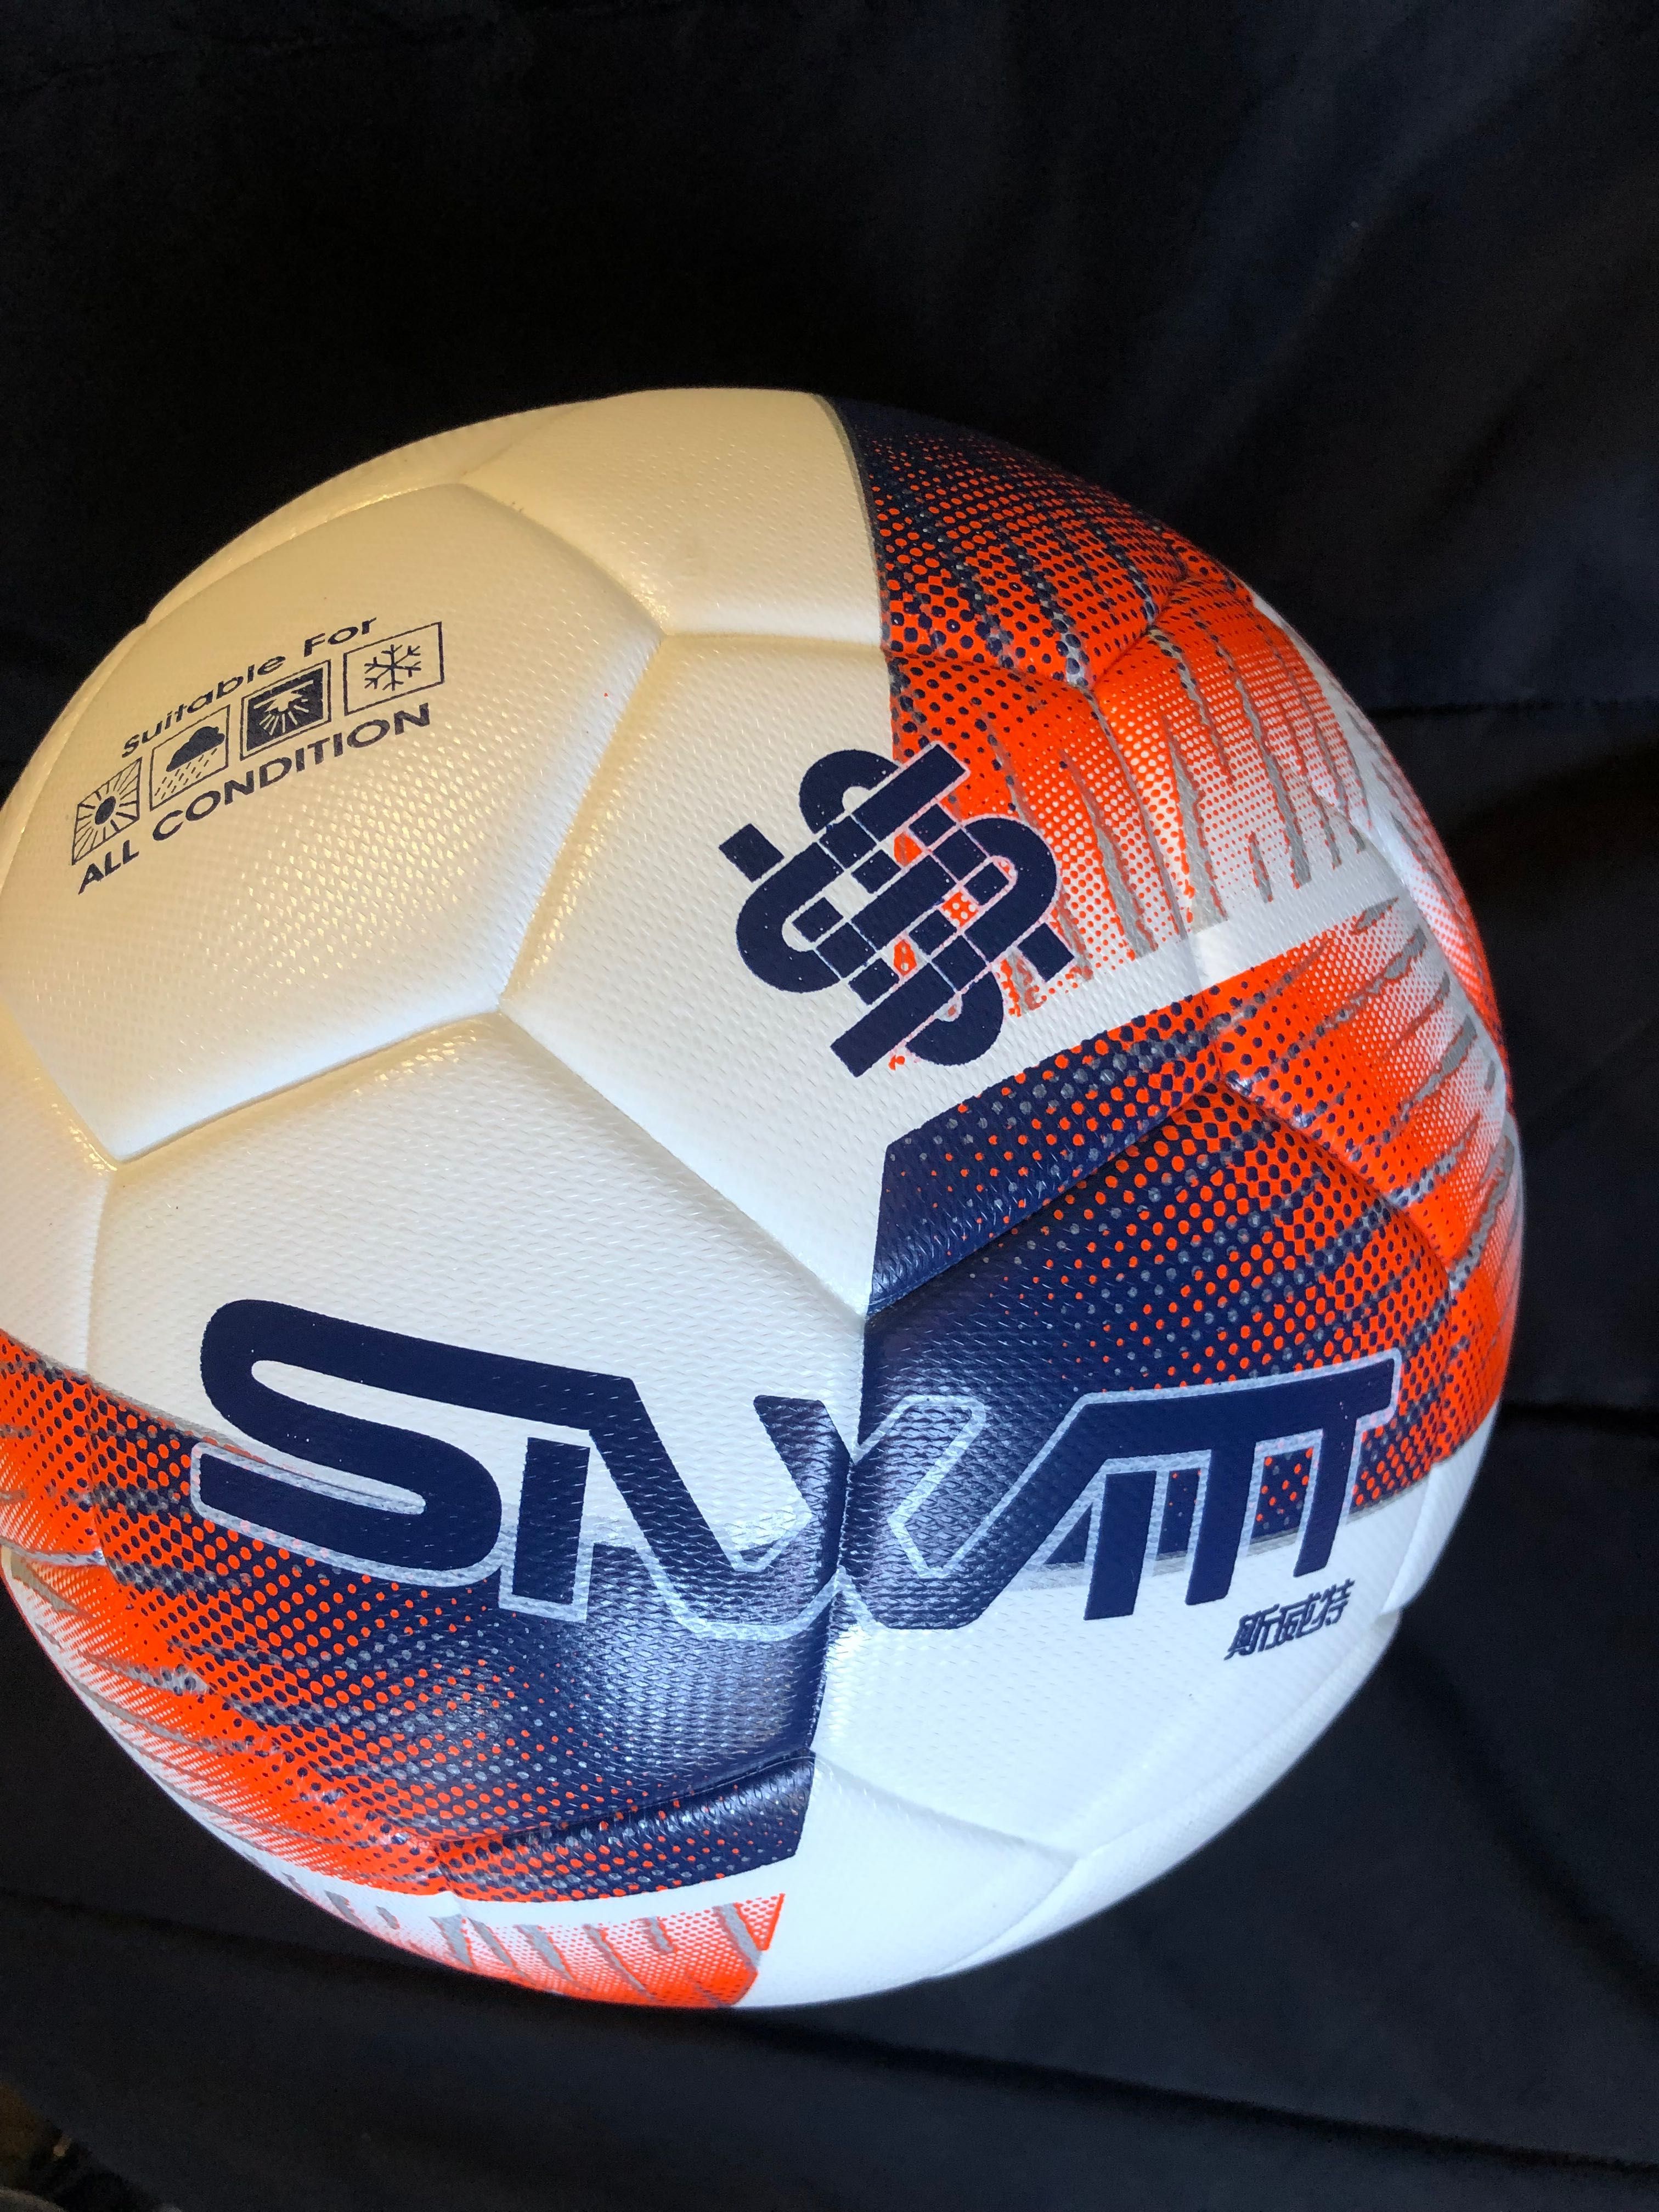 Футбольный мяч Geodesa Pro очень очень прочный